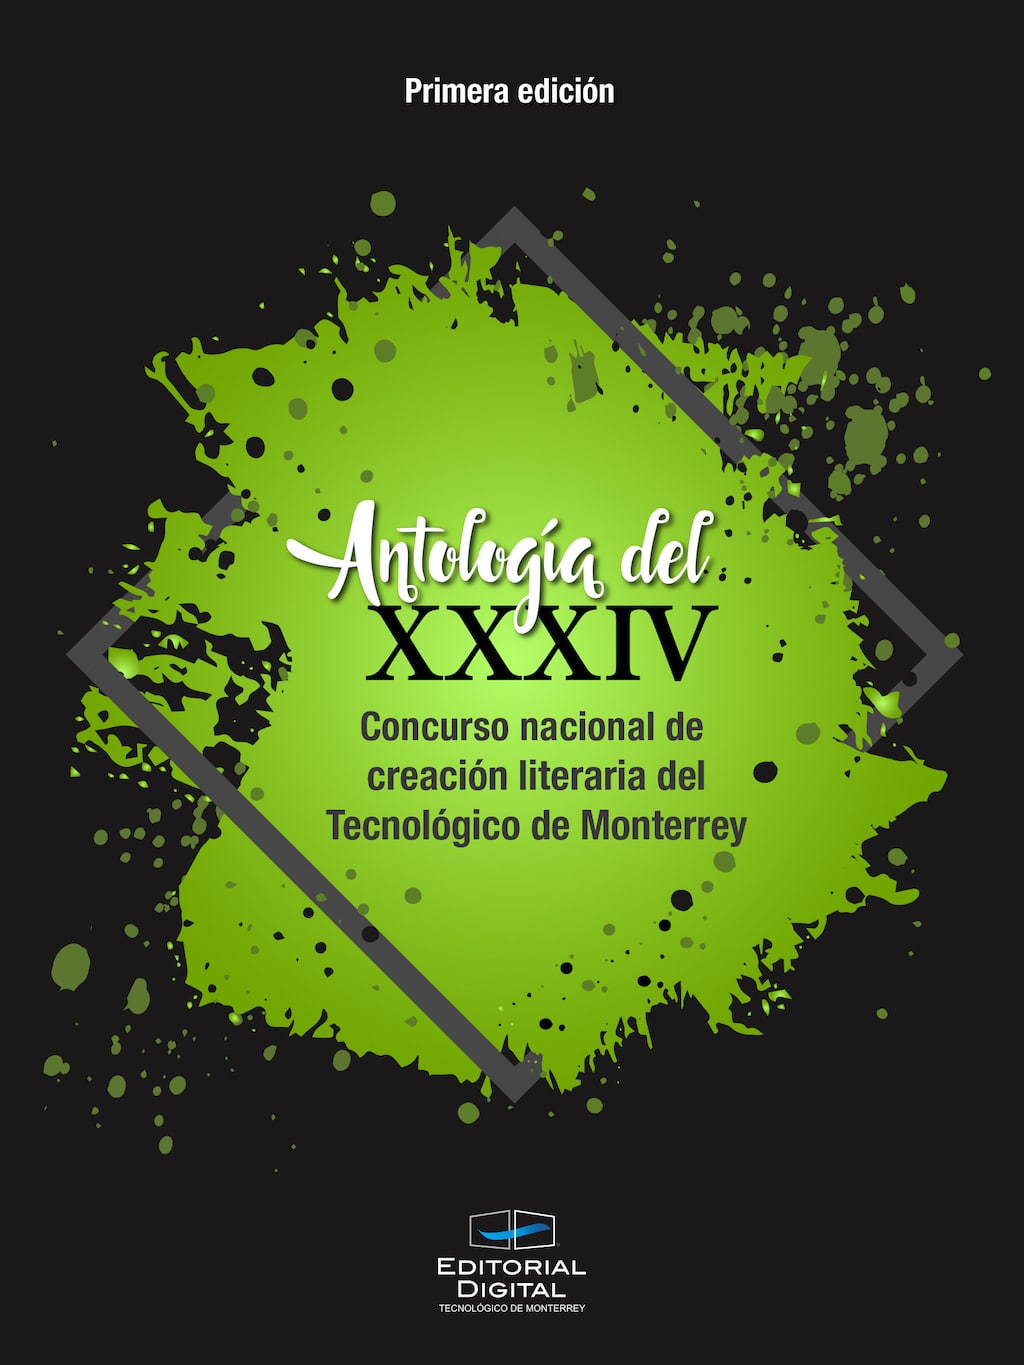 Antología del XXXIV Concurso nacional de creación literaria del Tecnológico de Monterrey